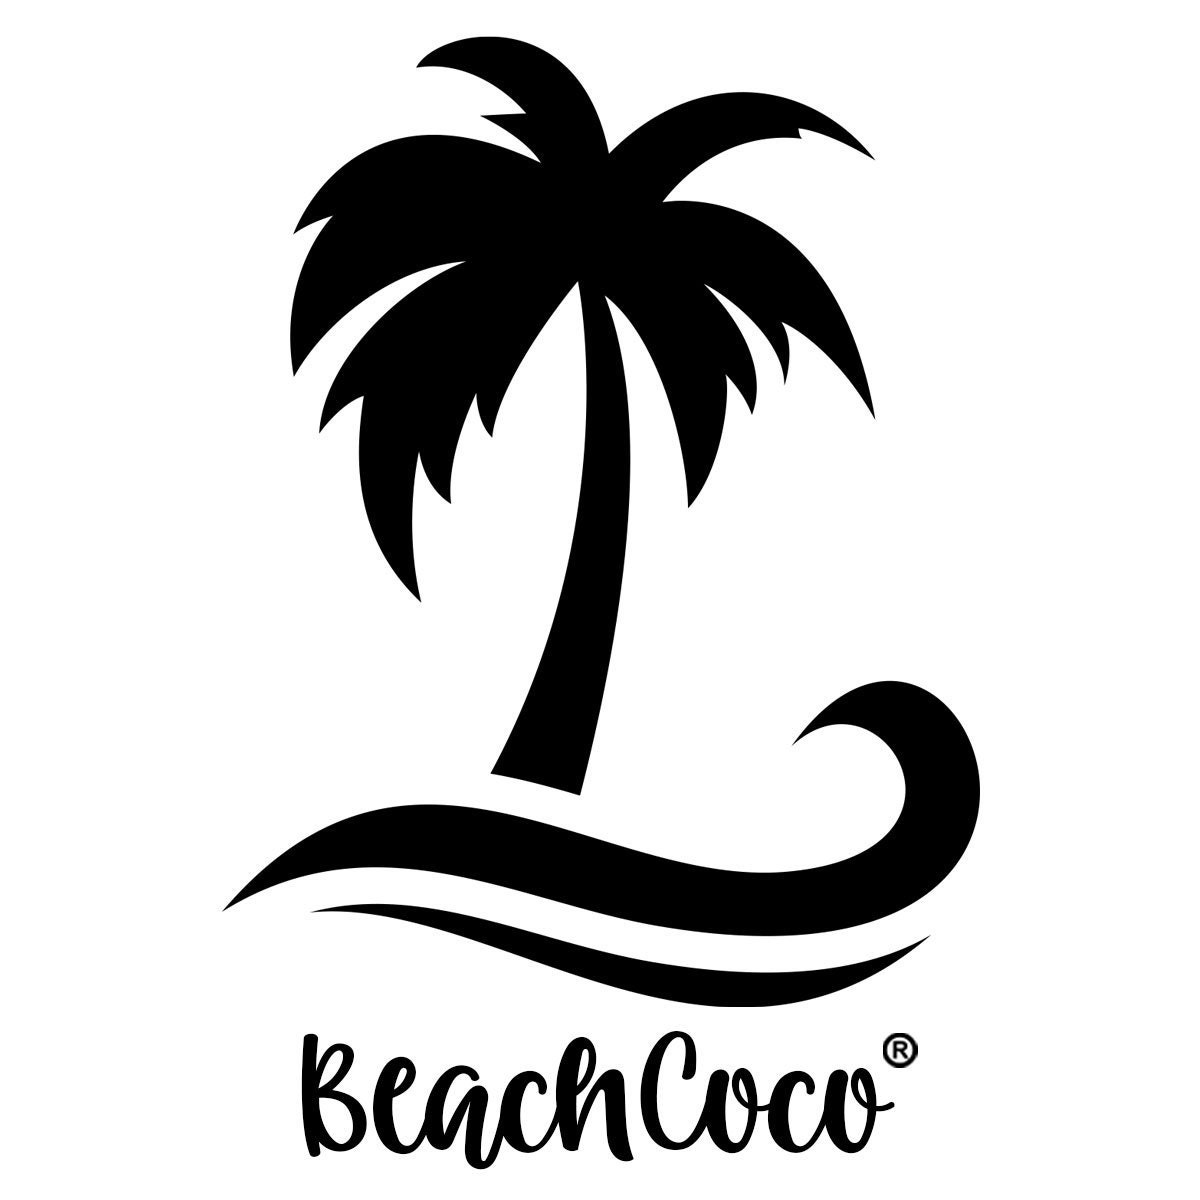 BeachCocoShop - Etsy